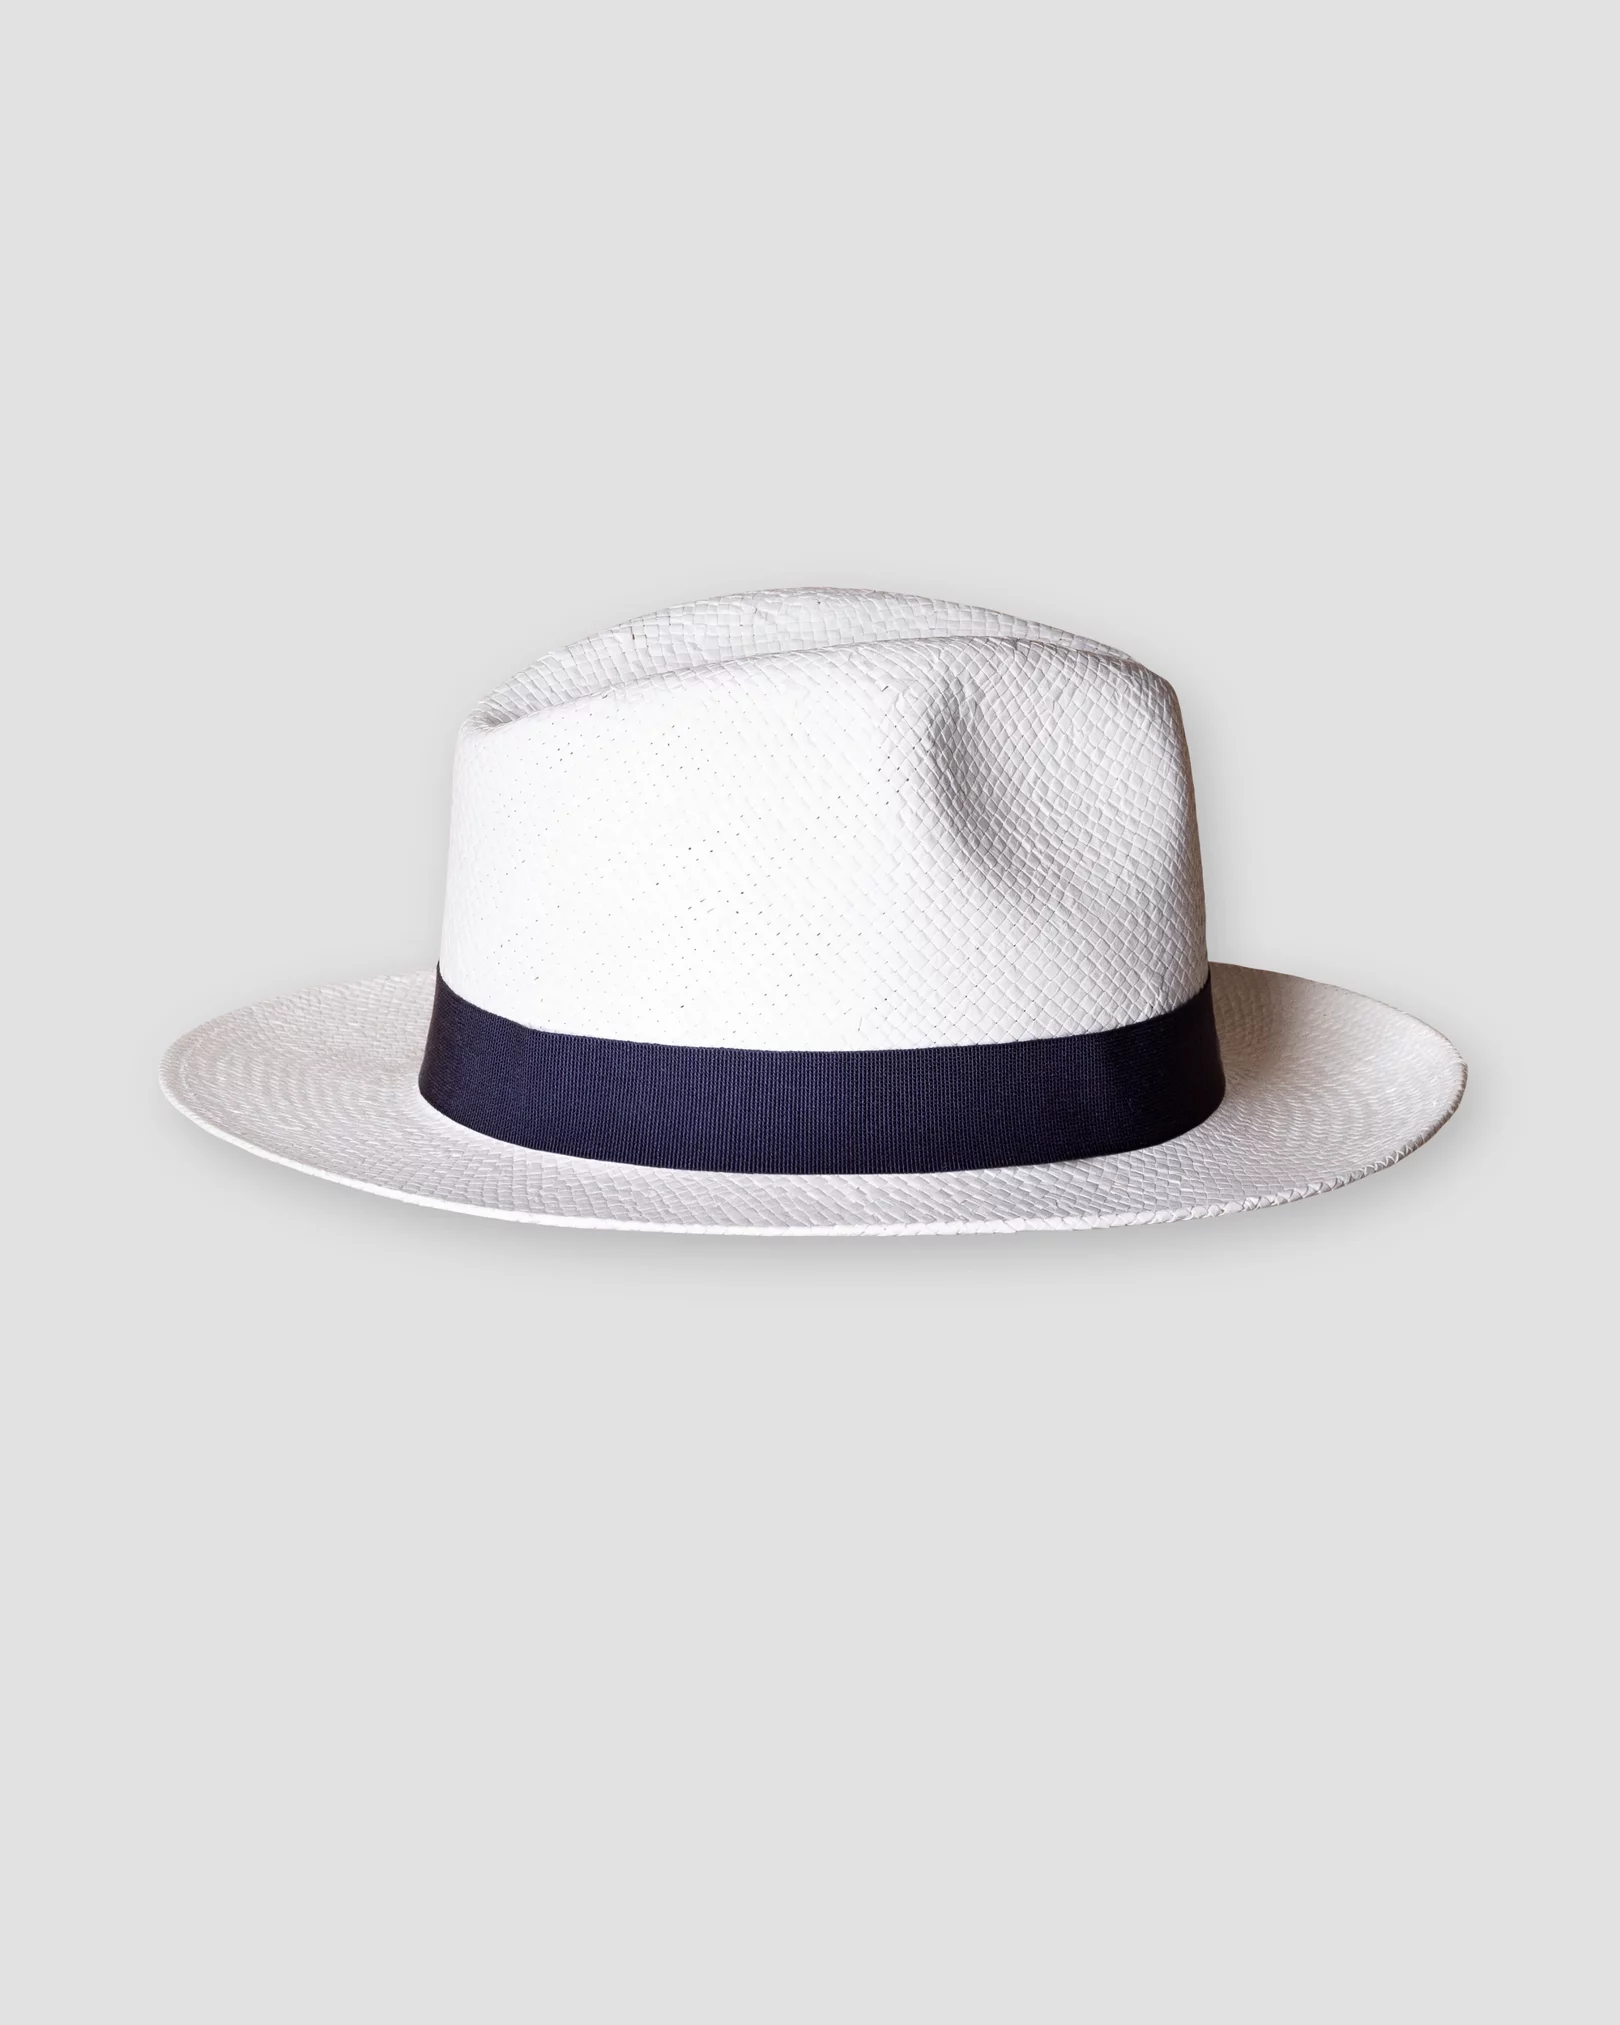 Eton - white straw hat navy ribbon